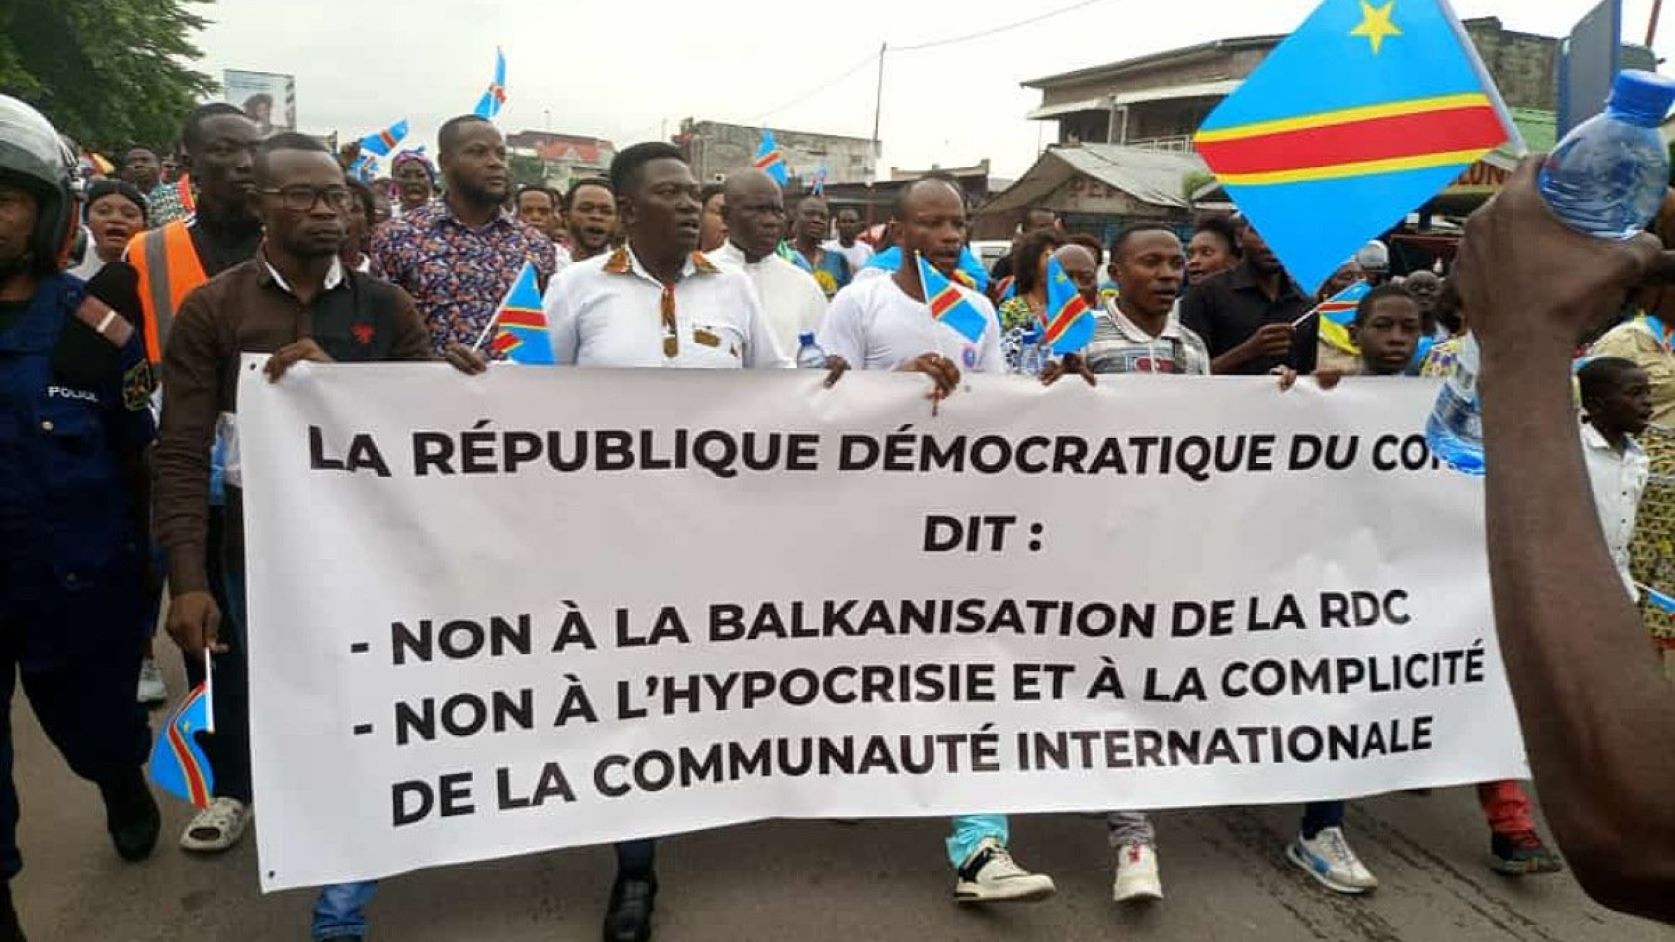 RDC: marches pacifiques des catholiques pour la paix et l’intégrité territoriale du pays